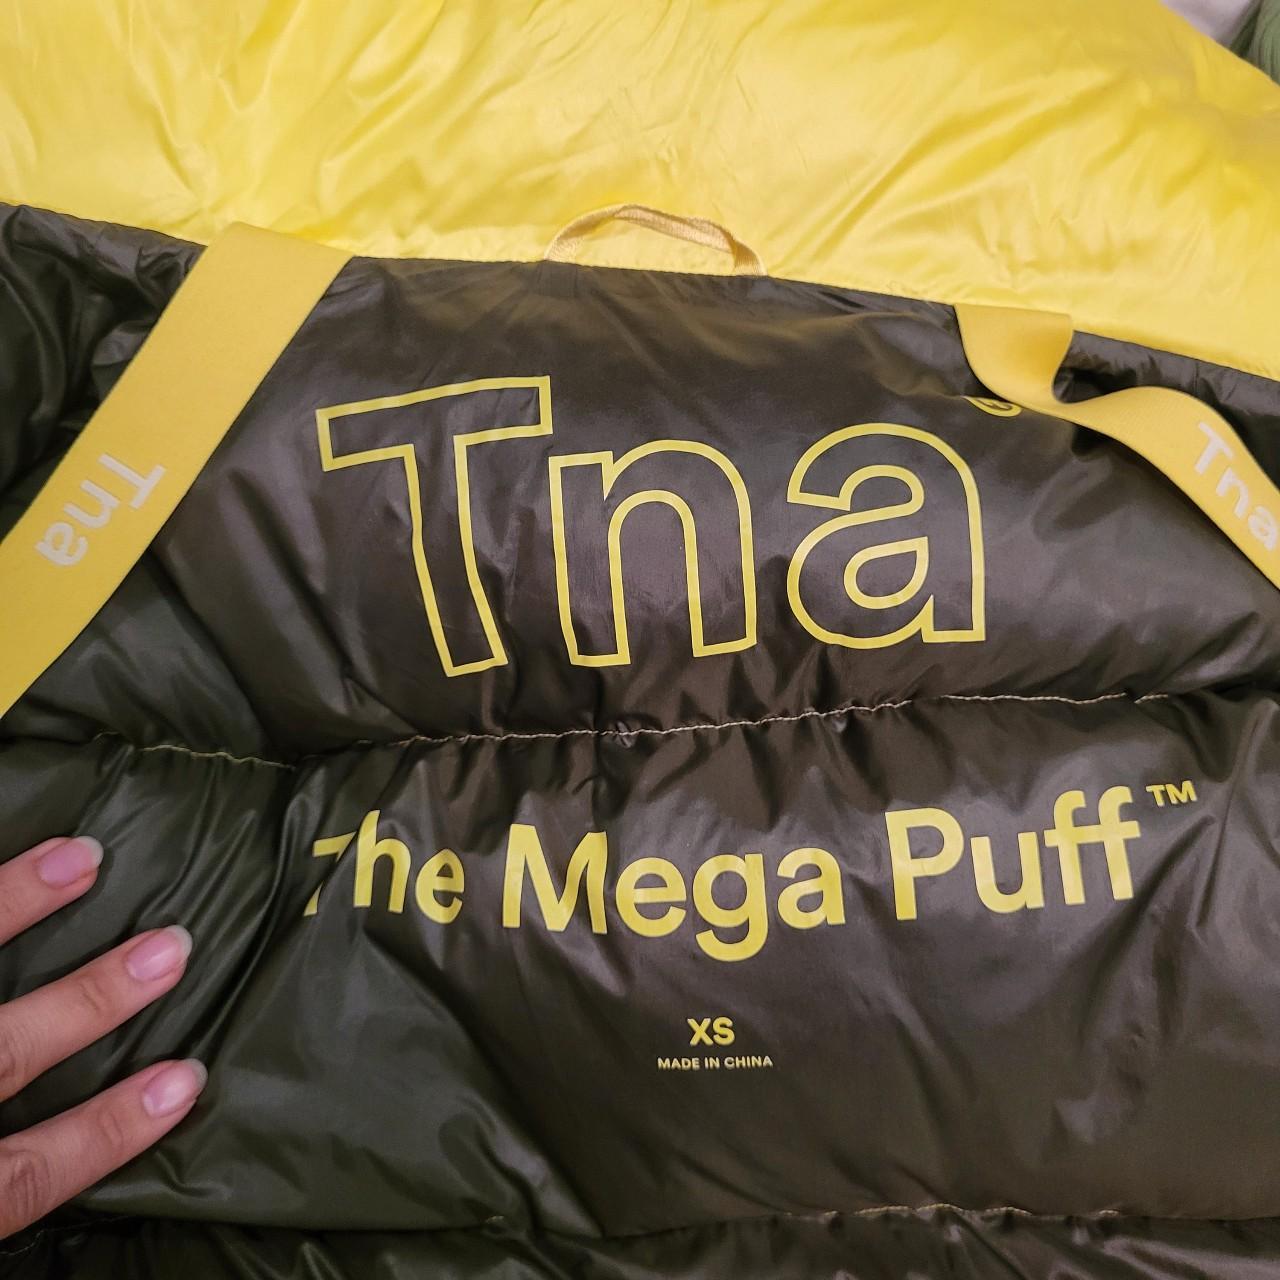 Aritzia TNA Mega Puff coat in size XS, modeled on... - Depop